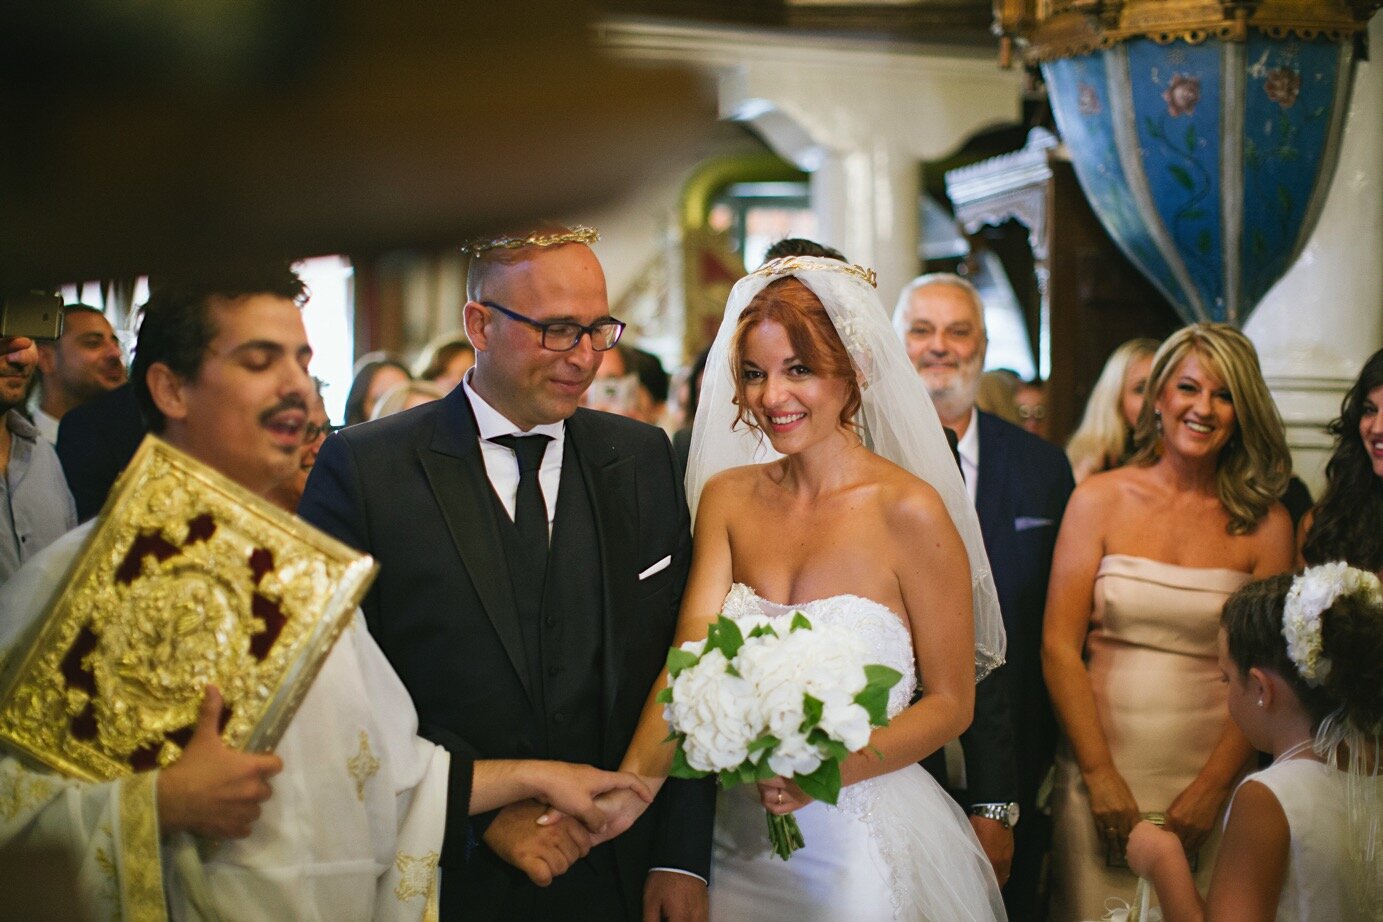 Wedding_Portaria_Efthimiopoulos_Photography0045.jpg